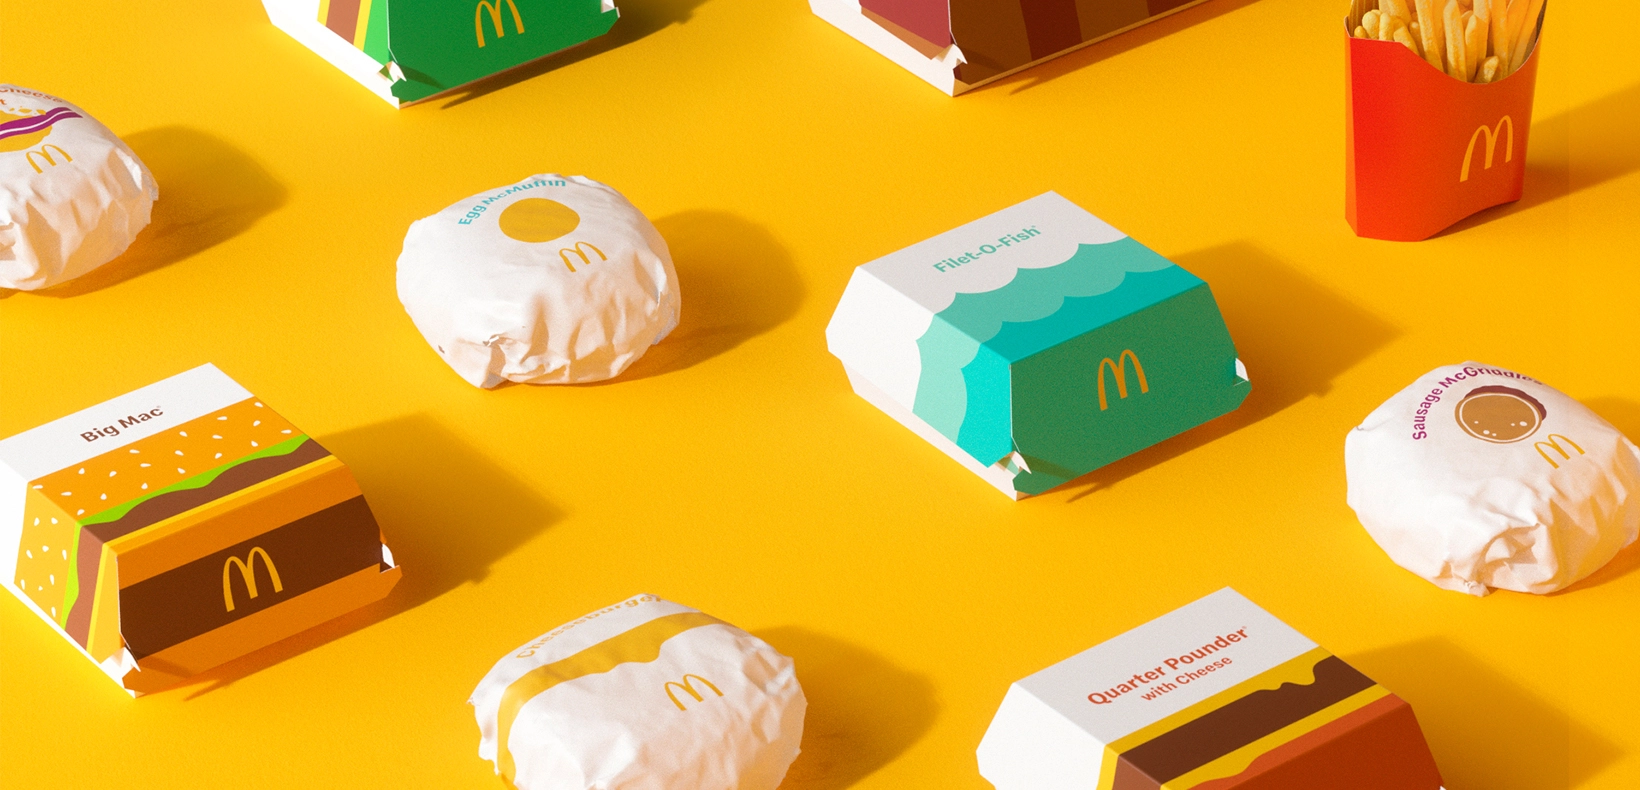 Новый редизайн упаковки Макдональдс